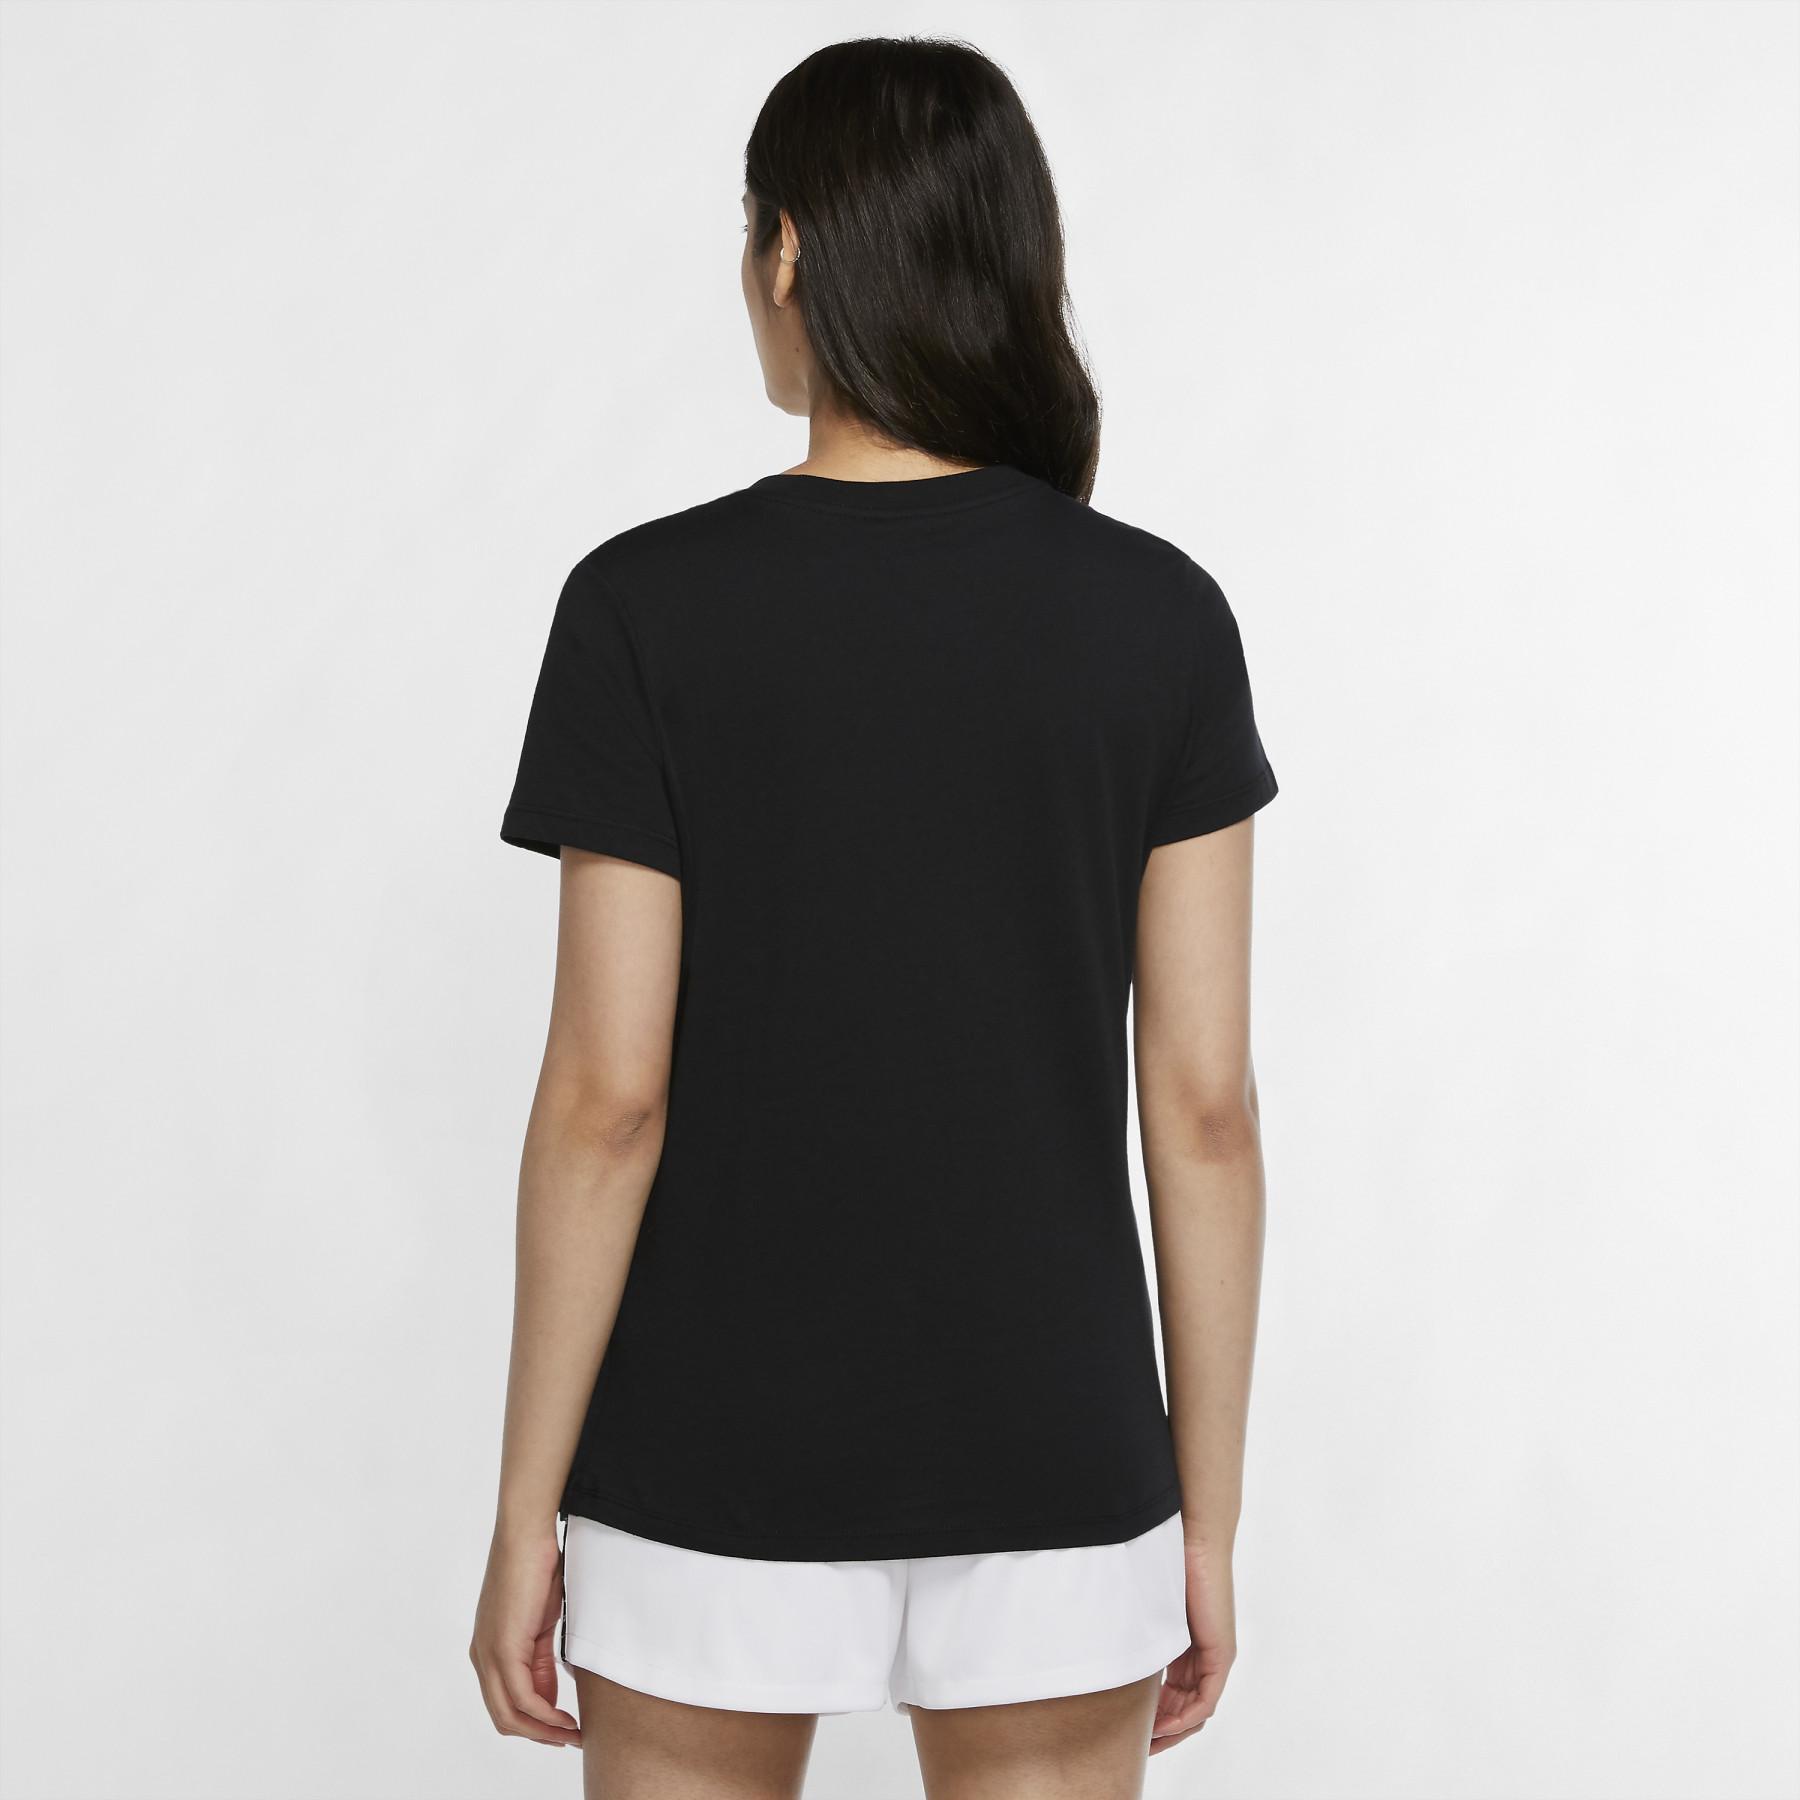 T-shirt femme PSG coton 2020/21